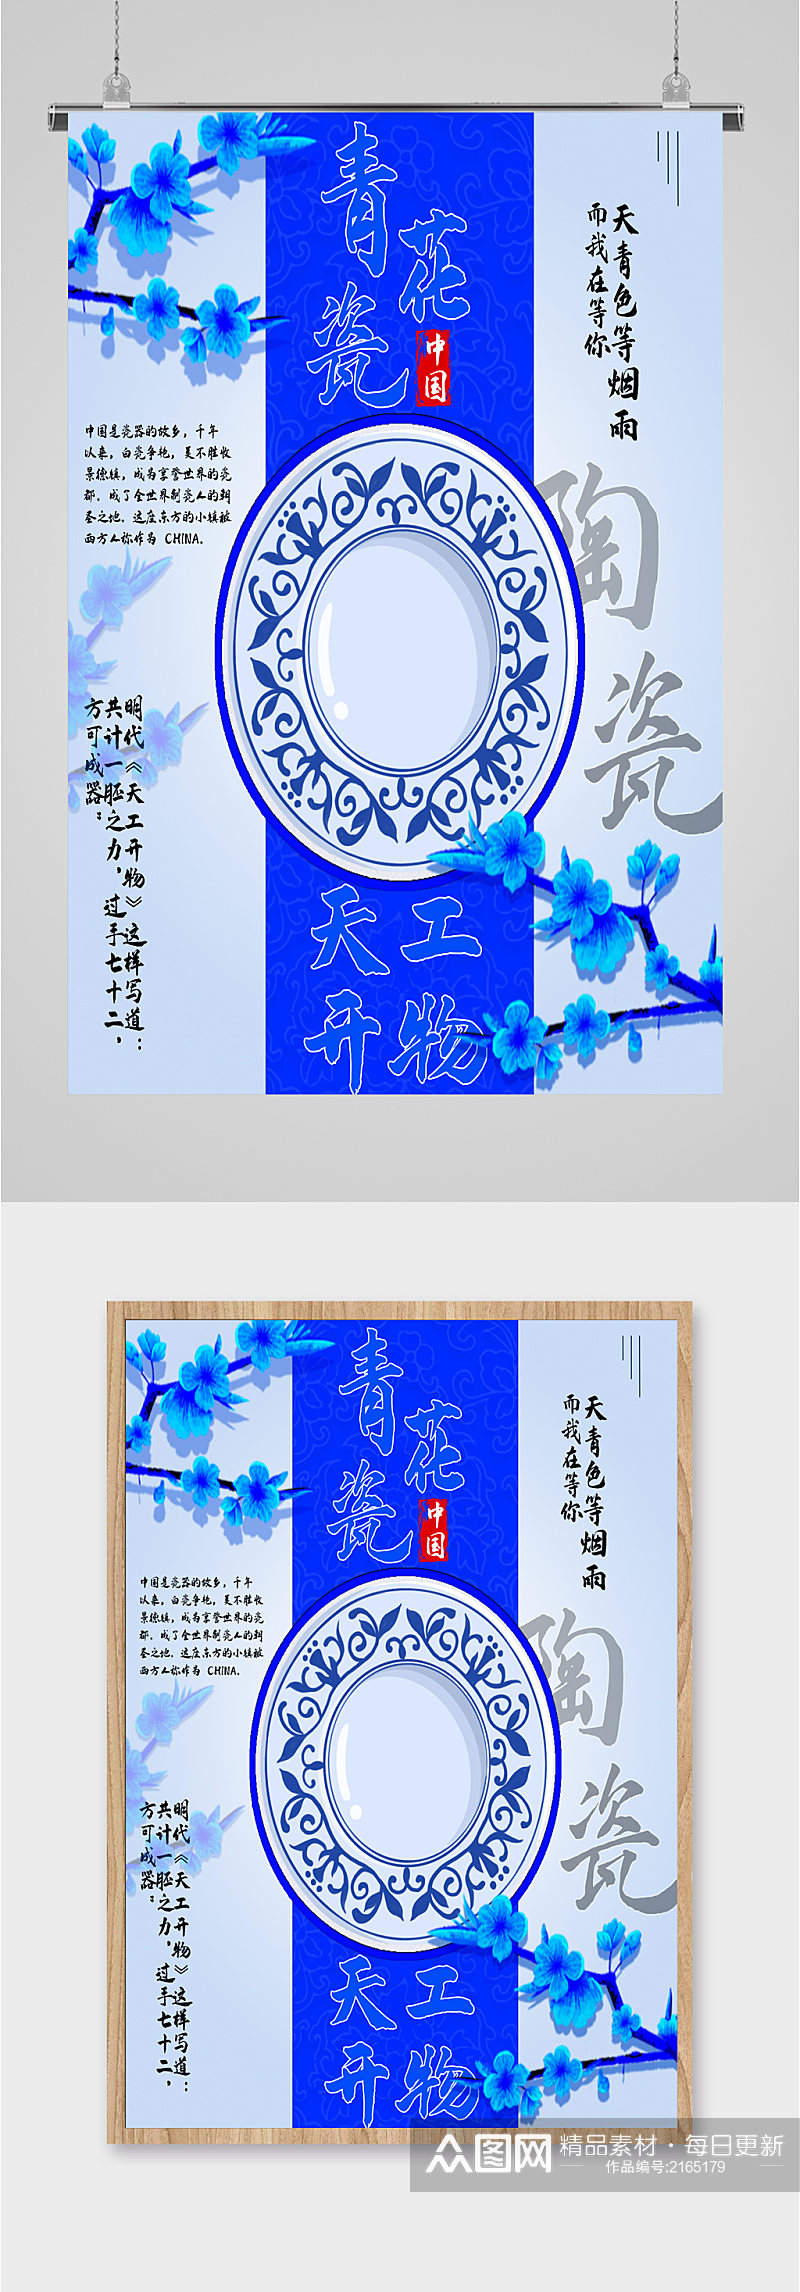 中国陶瓷工艺海报素材